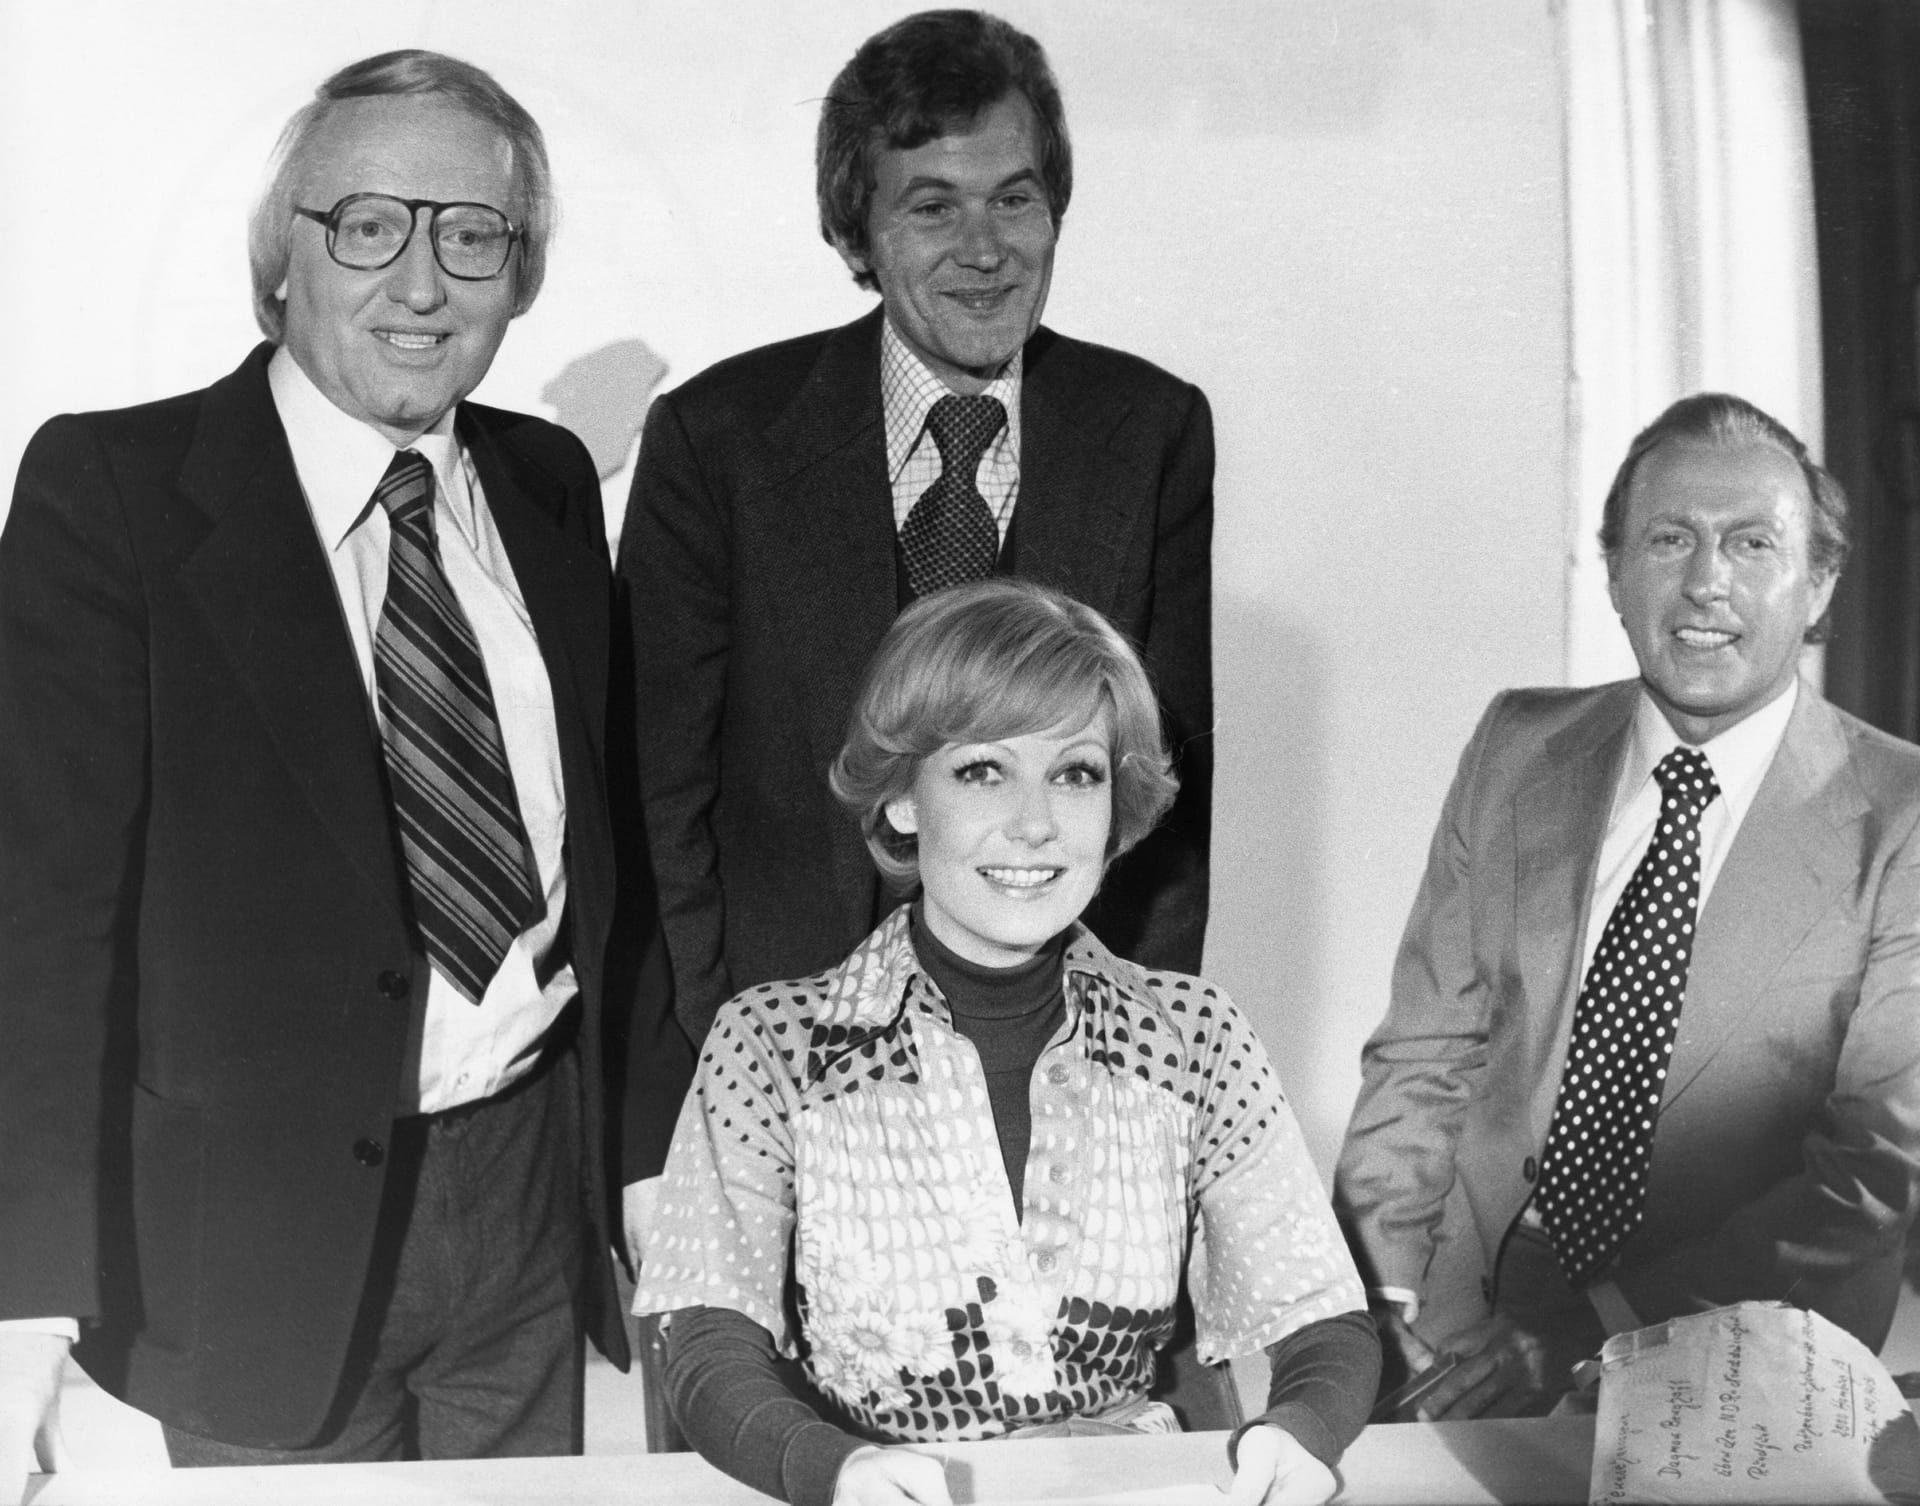 Werner Veigel, Wilhelm Wieben und Karl Heinz Köpcke: Das Männertrio gratuliert seiner ersten weiblichen Kollegin Dagmar Berghoff zu ihrer ersten Sendung am 16.06.1976 in Hamburg.